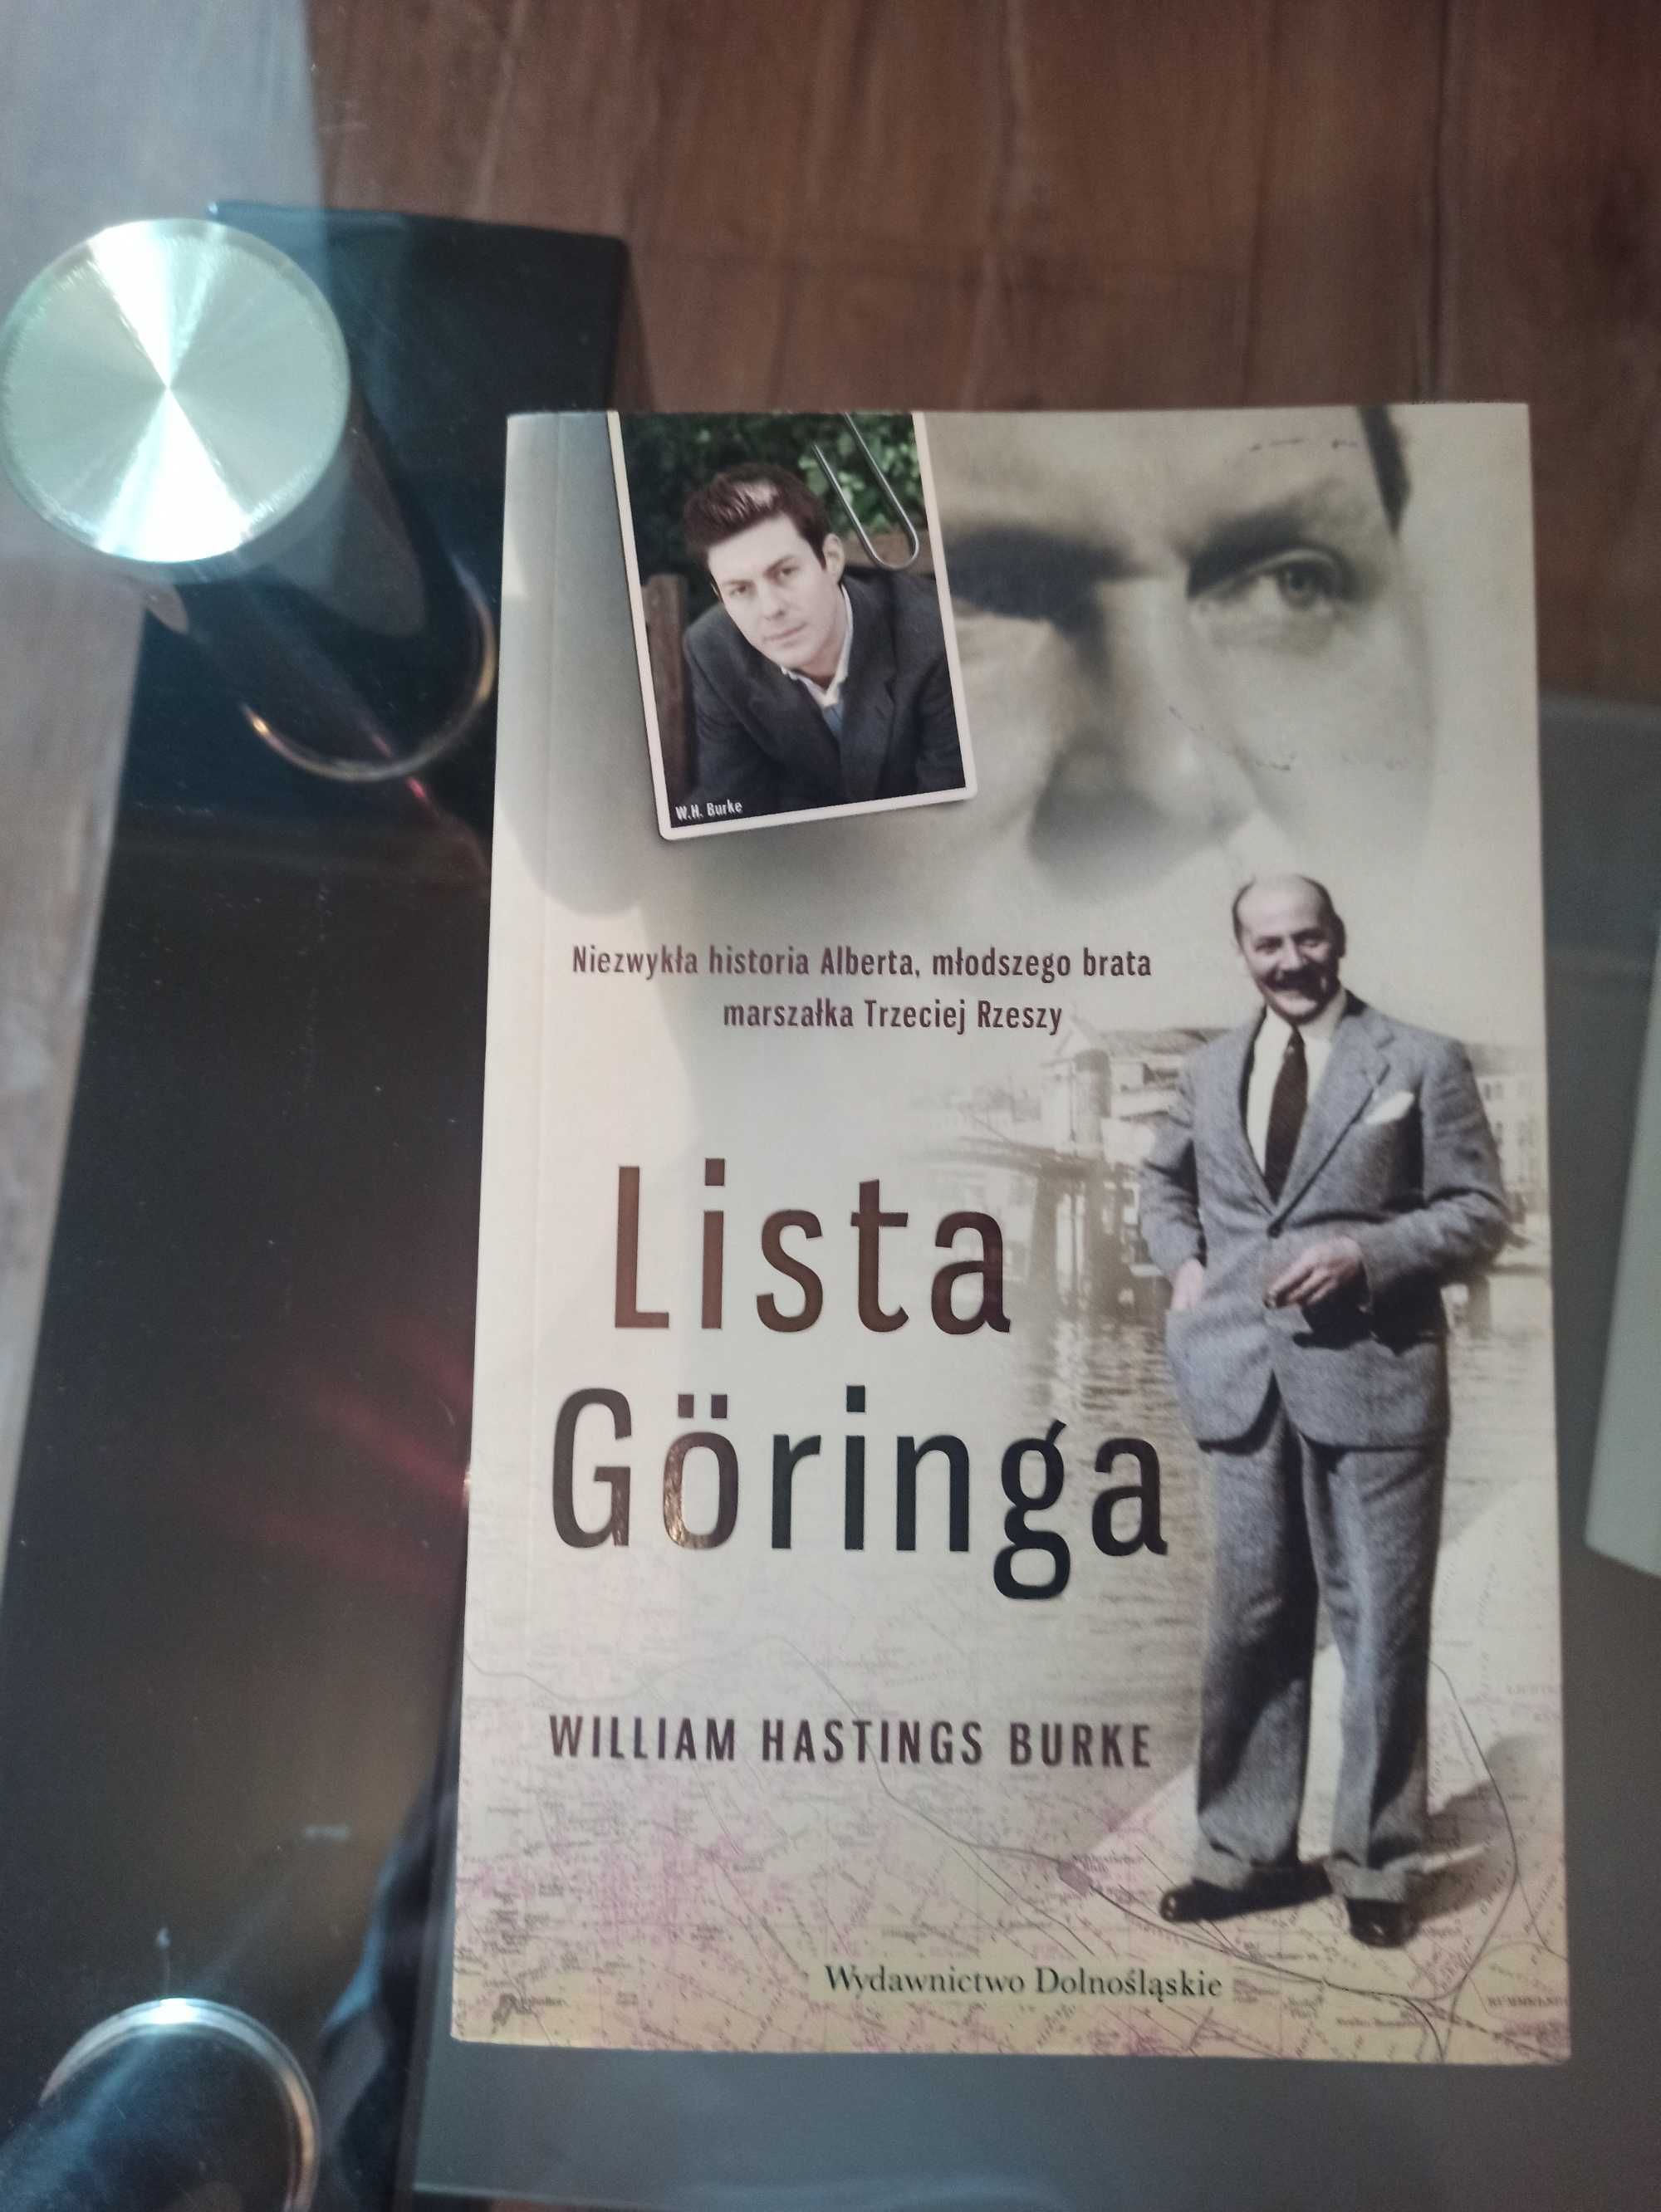 Książka Williama Hastings'a Burke "Lista Goringa"